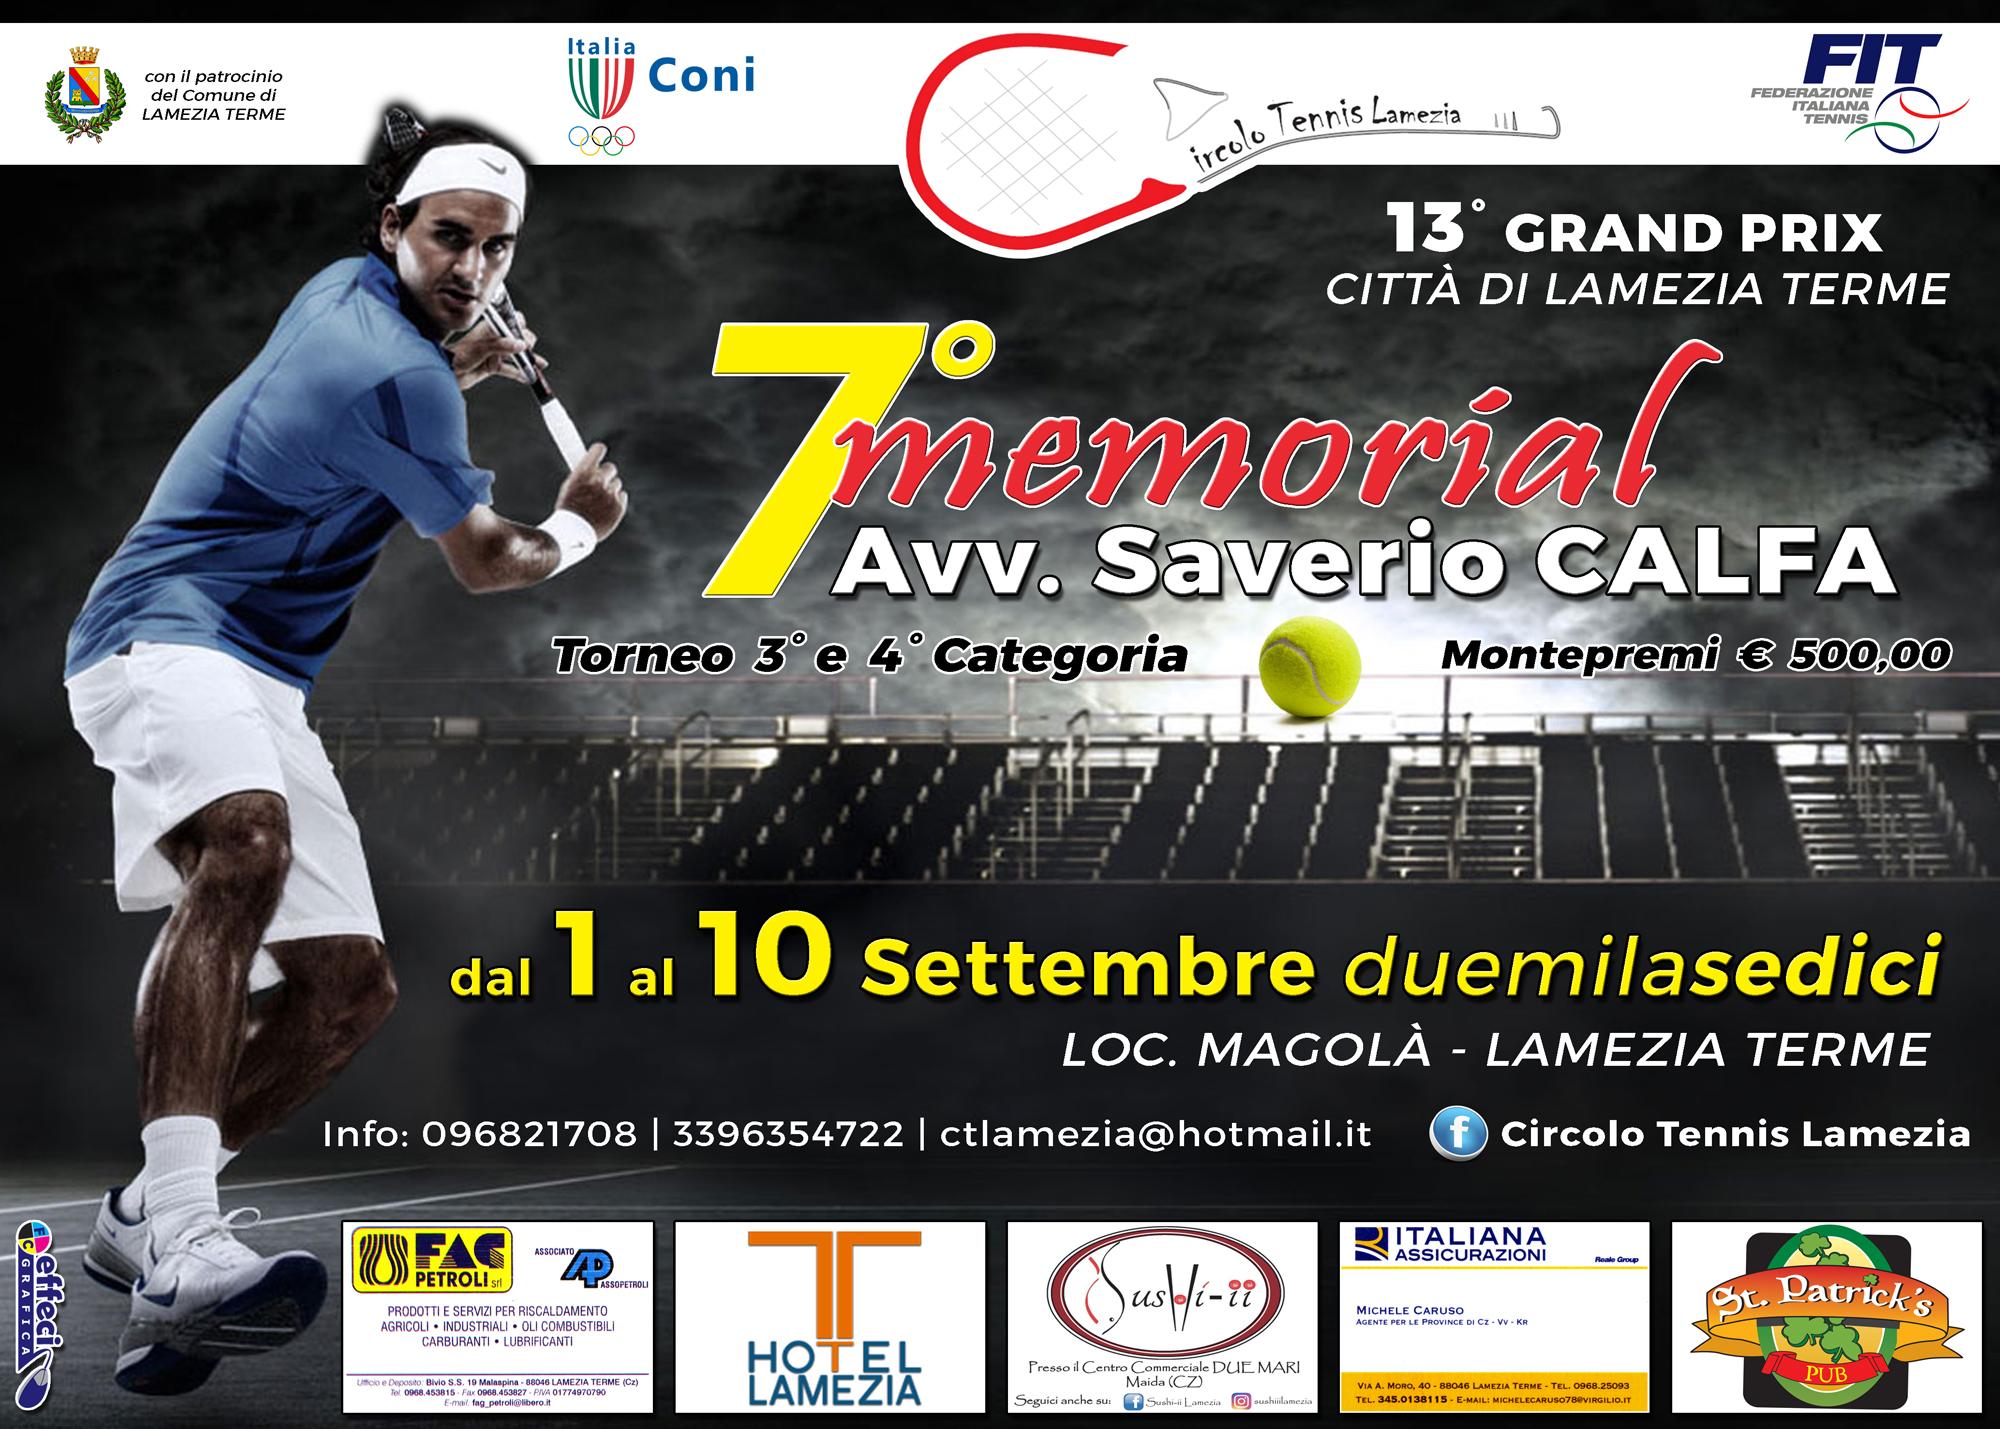 CT Lamezia: 13° Grand Prix Città di Lamezia Terme – 7°memorial “Avv. Saverio Calfa” Torneo III e IV Categoria – Montepremi € 500,00 dal 1 al 11 settembre 2016